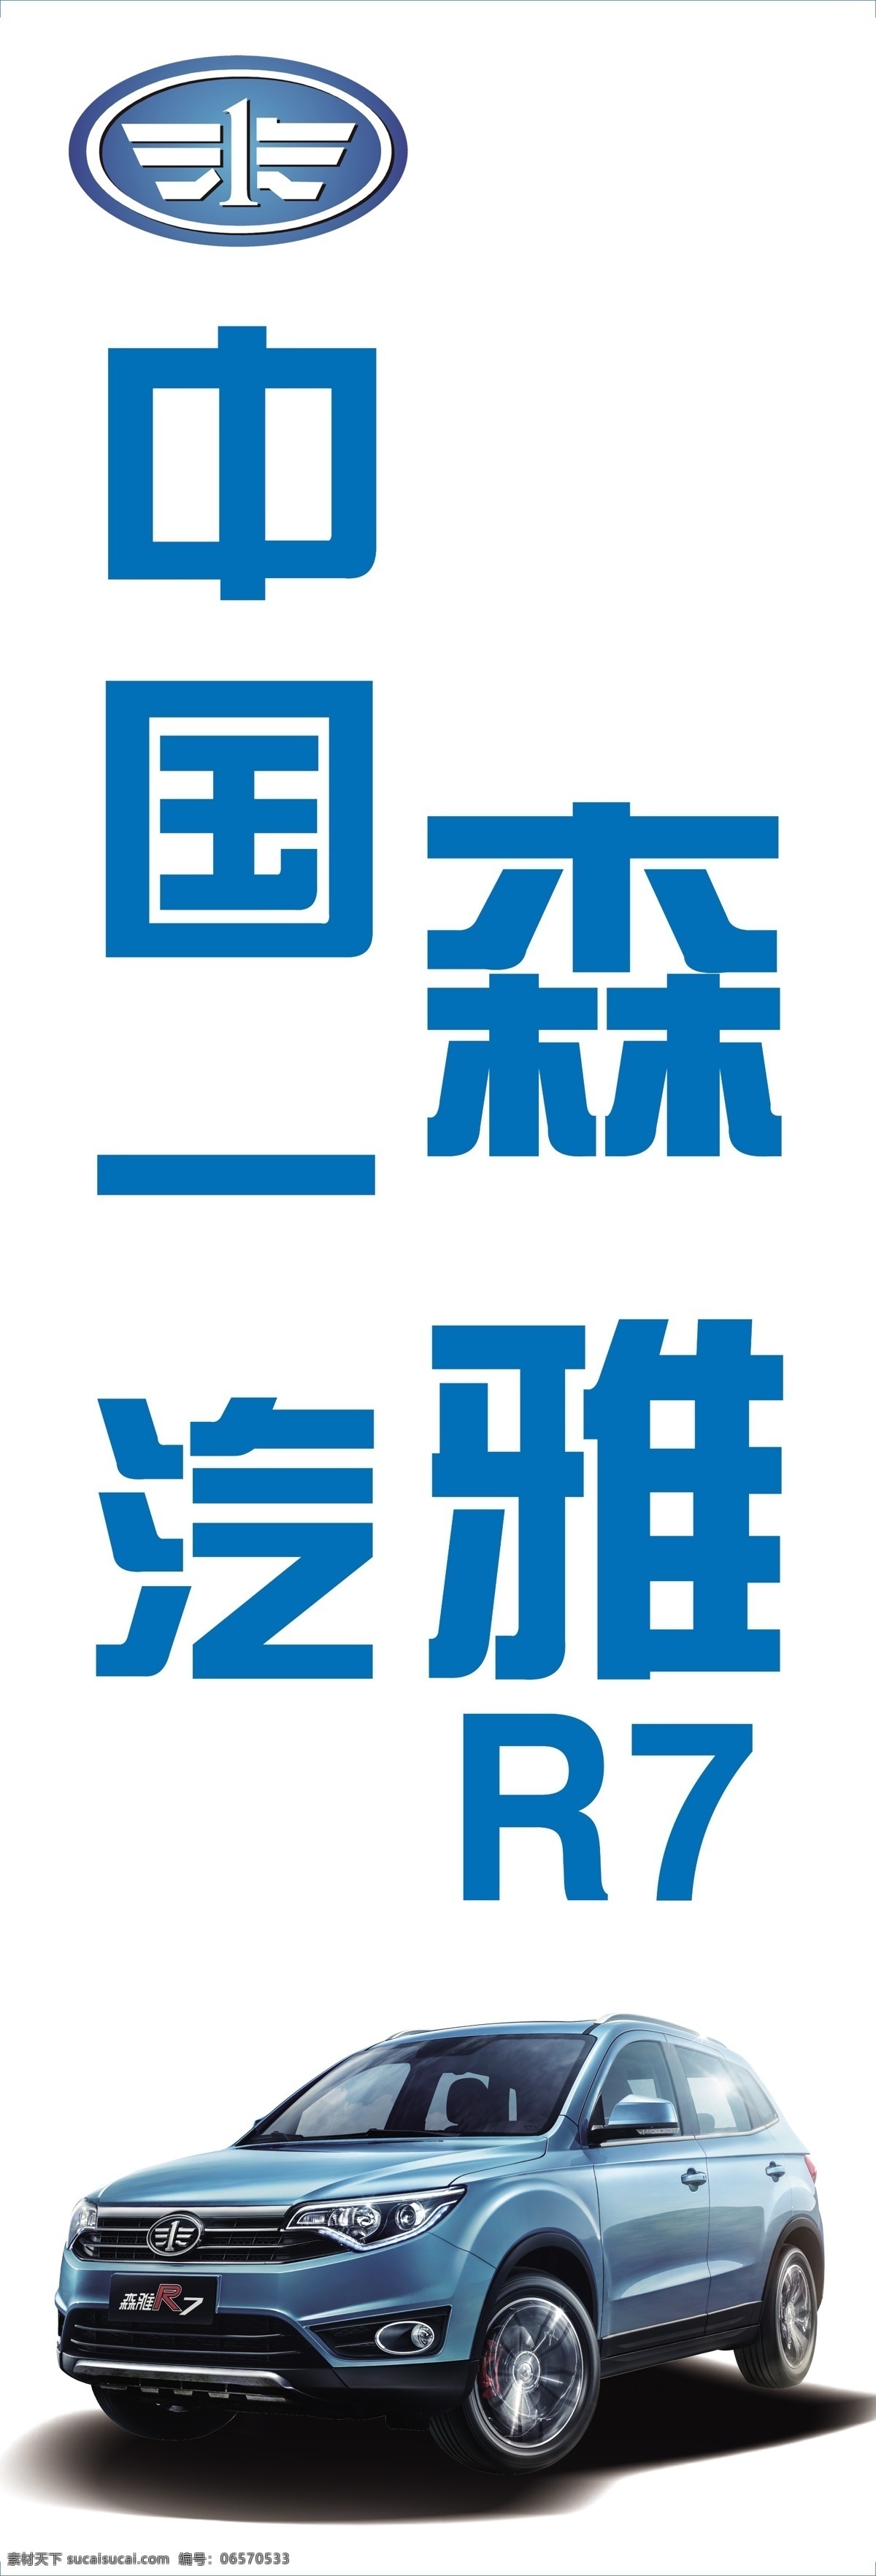 中国一汽 森雅r7 汽车图 标志 logo 展板模板